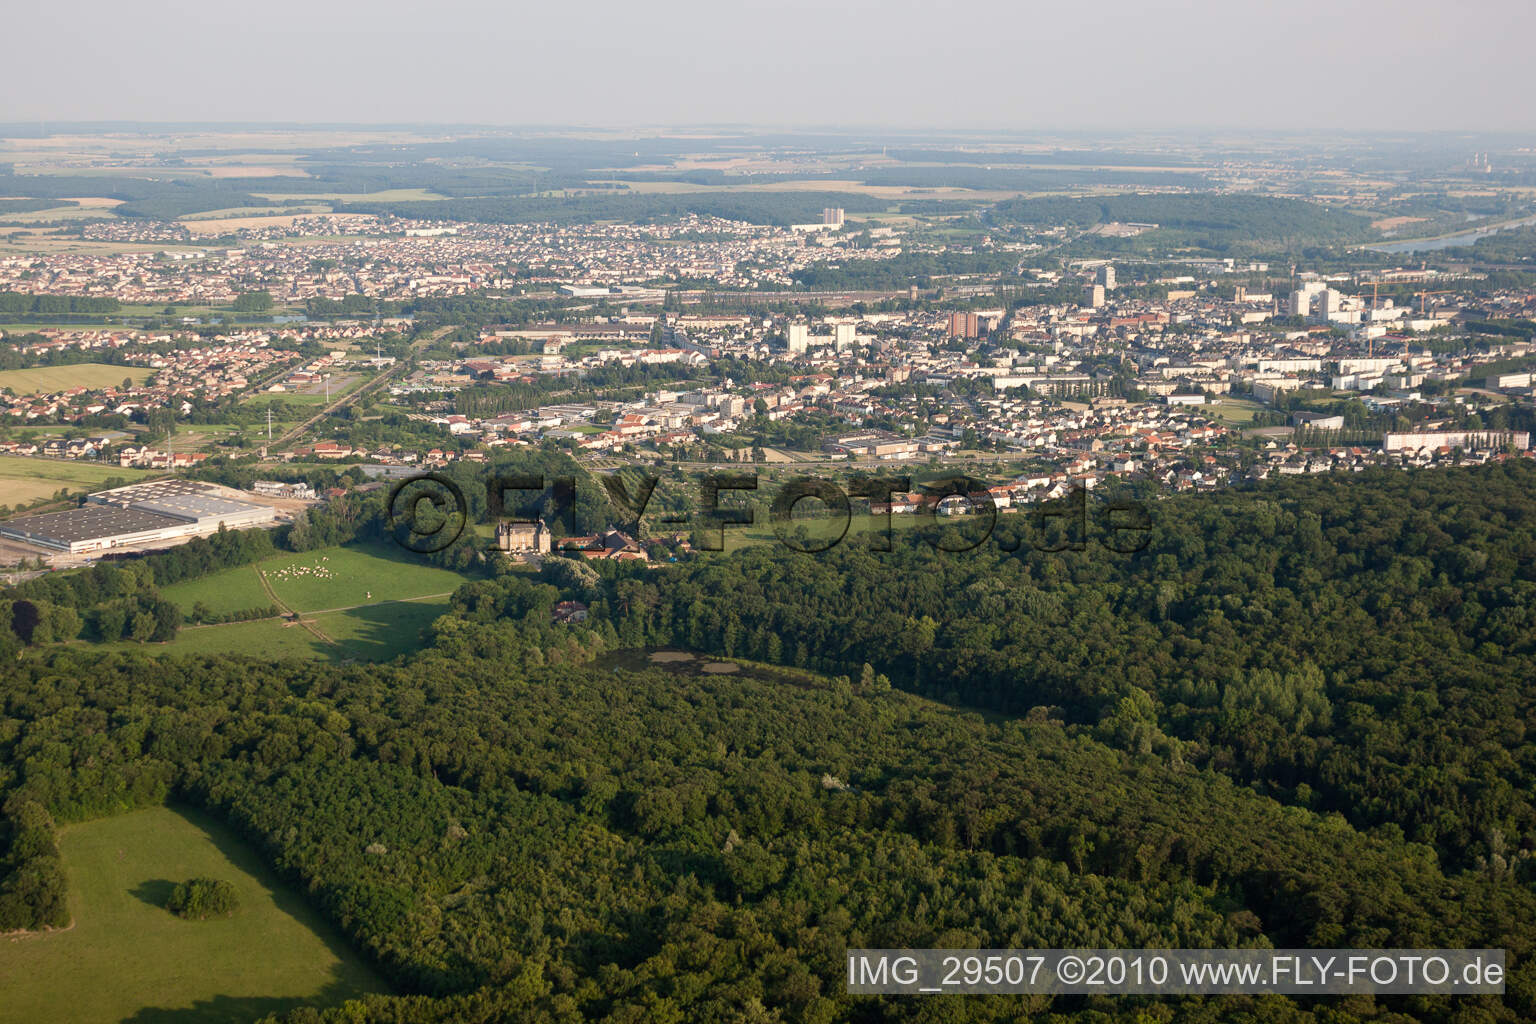 Luftbild von Thionville im Bundesland Moselle, Frankreich